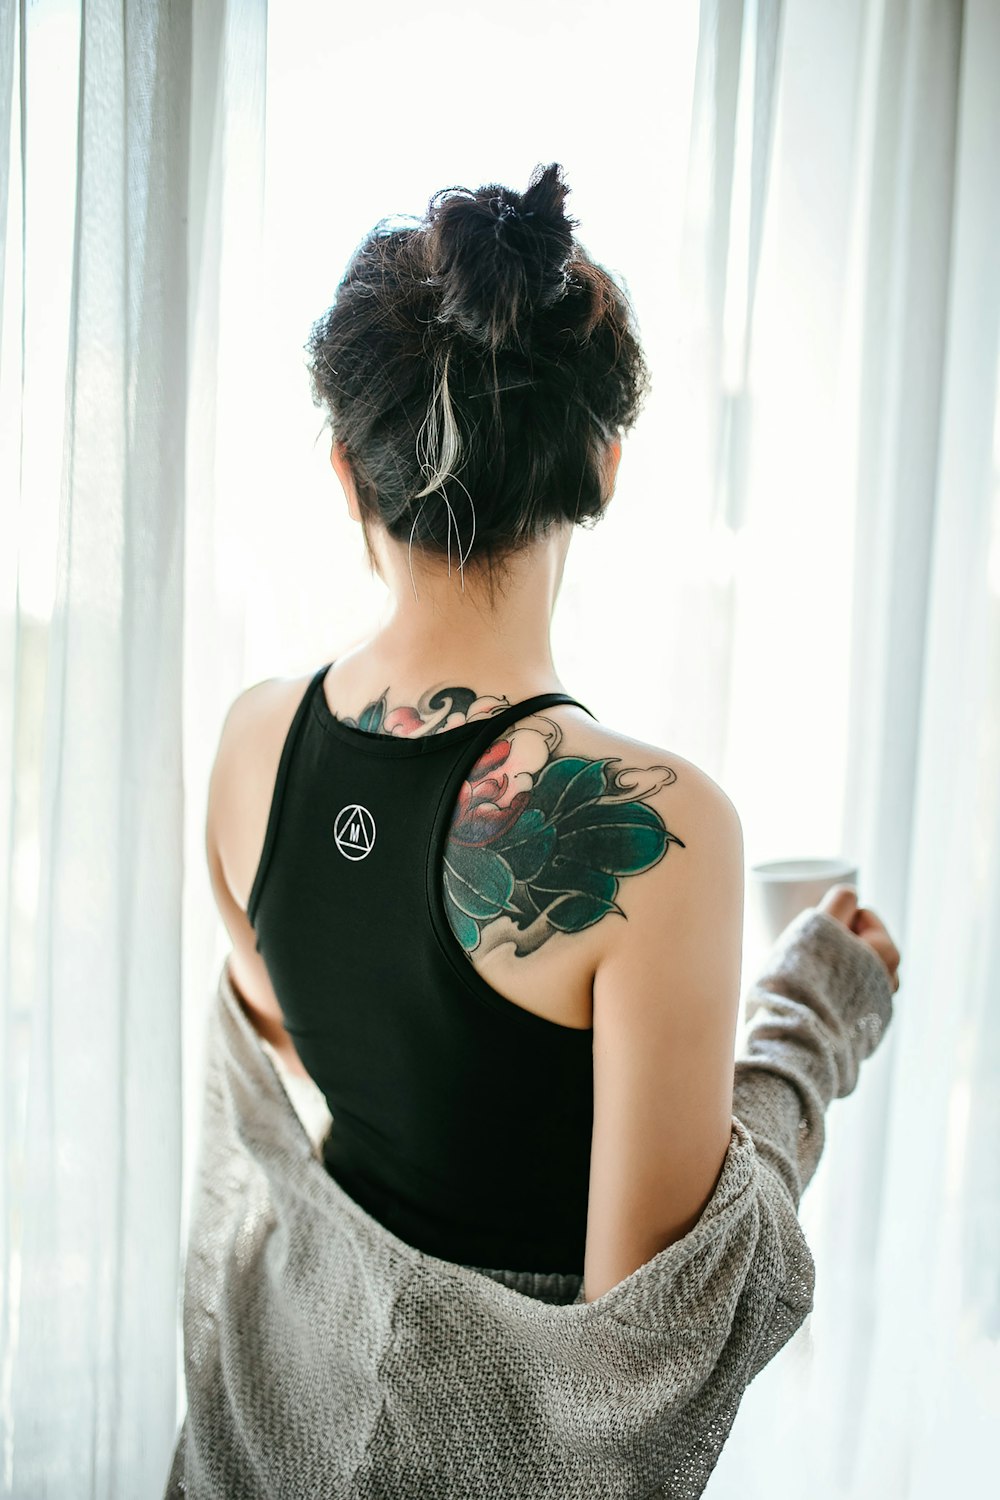 Femme en débardeur noir avec tatouage floral vert sur le dos